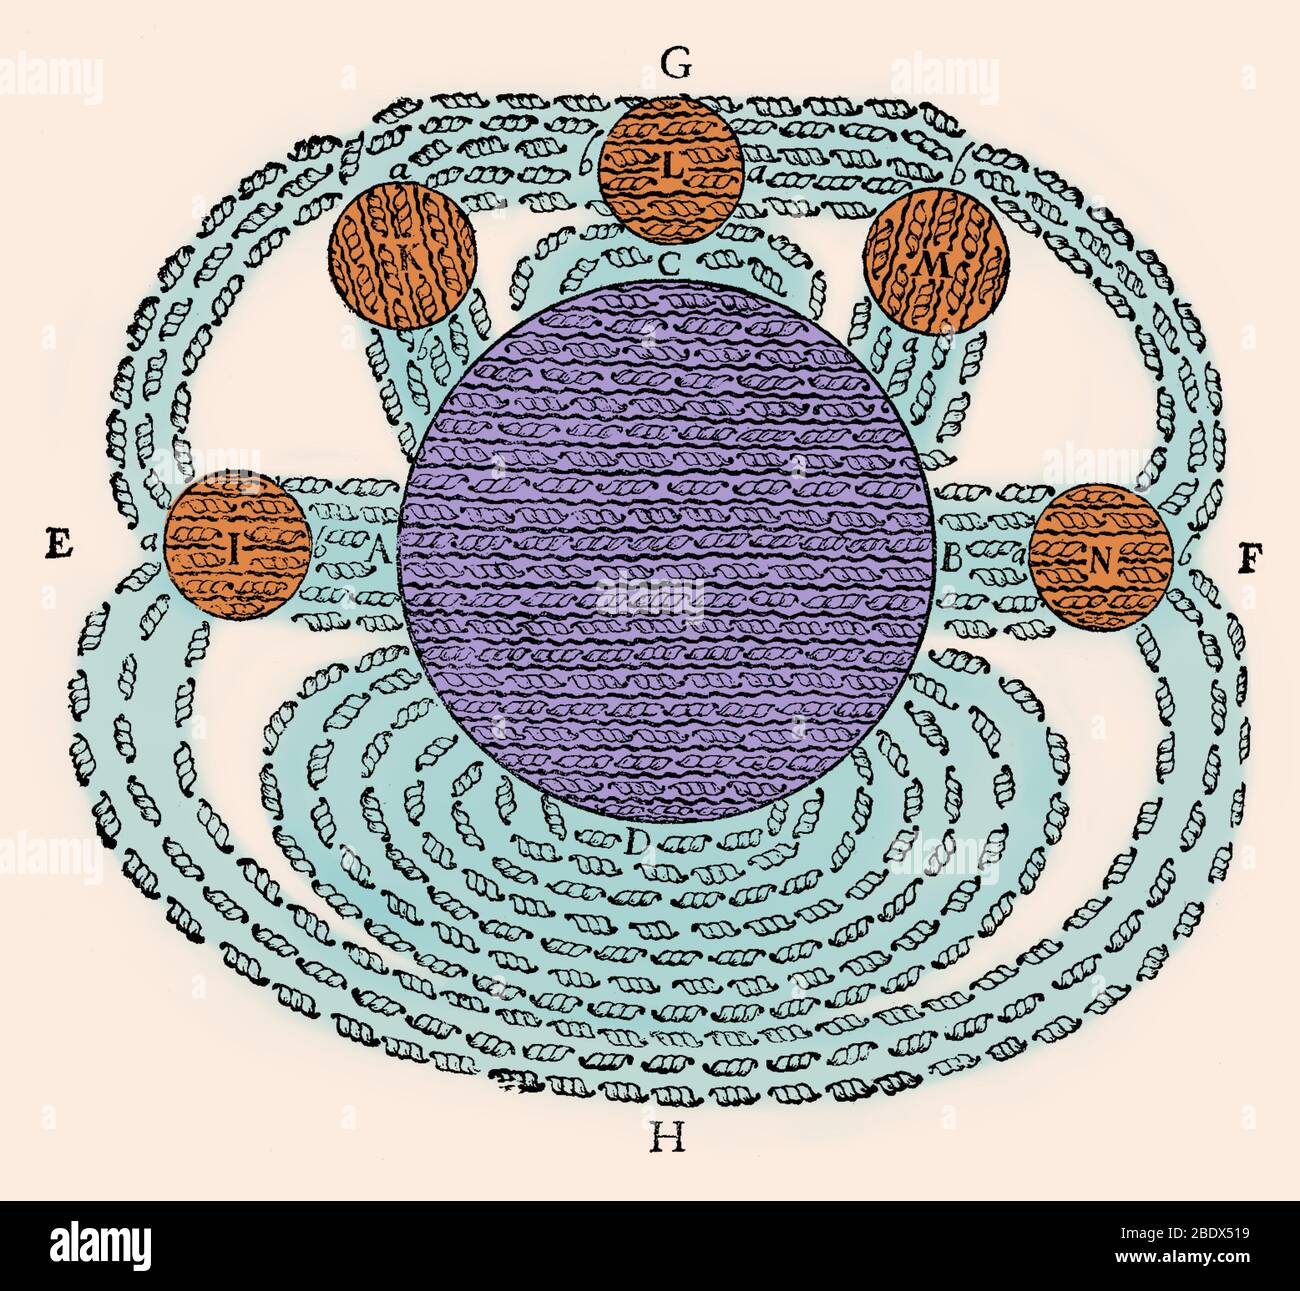 Champ magnétique par René Descartes, à partir de ses Principia Philosophiae, 1644. C'est l'un des premiers dessins du concept d'un champ magnétique. Il montre le champ magnétique de la terre (D) attirer plusieurs tables rondes (lodestones J, K, L, M, N) et illustre sa théorie du magnétisme. Descartes a proposé que l'attraction magnétique a été causé par la circulation de minuscules particules hélicoïdales, pièces filetées (illustré), qui circule à travers les pores à filetage parallèle dans les aimants, dans l'intermédiaire du pôle Sud (A), à travers le pôle Nord (B), puis par l'espace autour de l'aimant (G, H) retour vers le Sud Banque D'Images